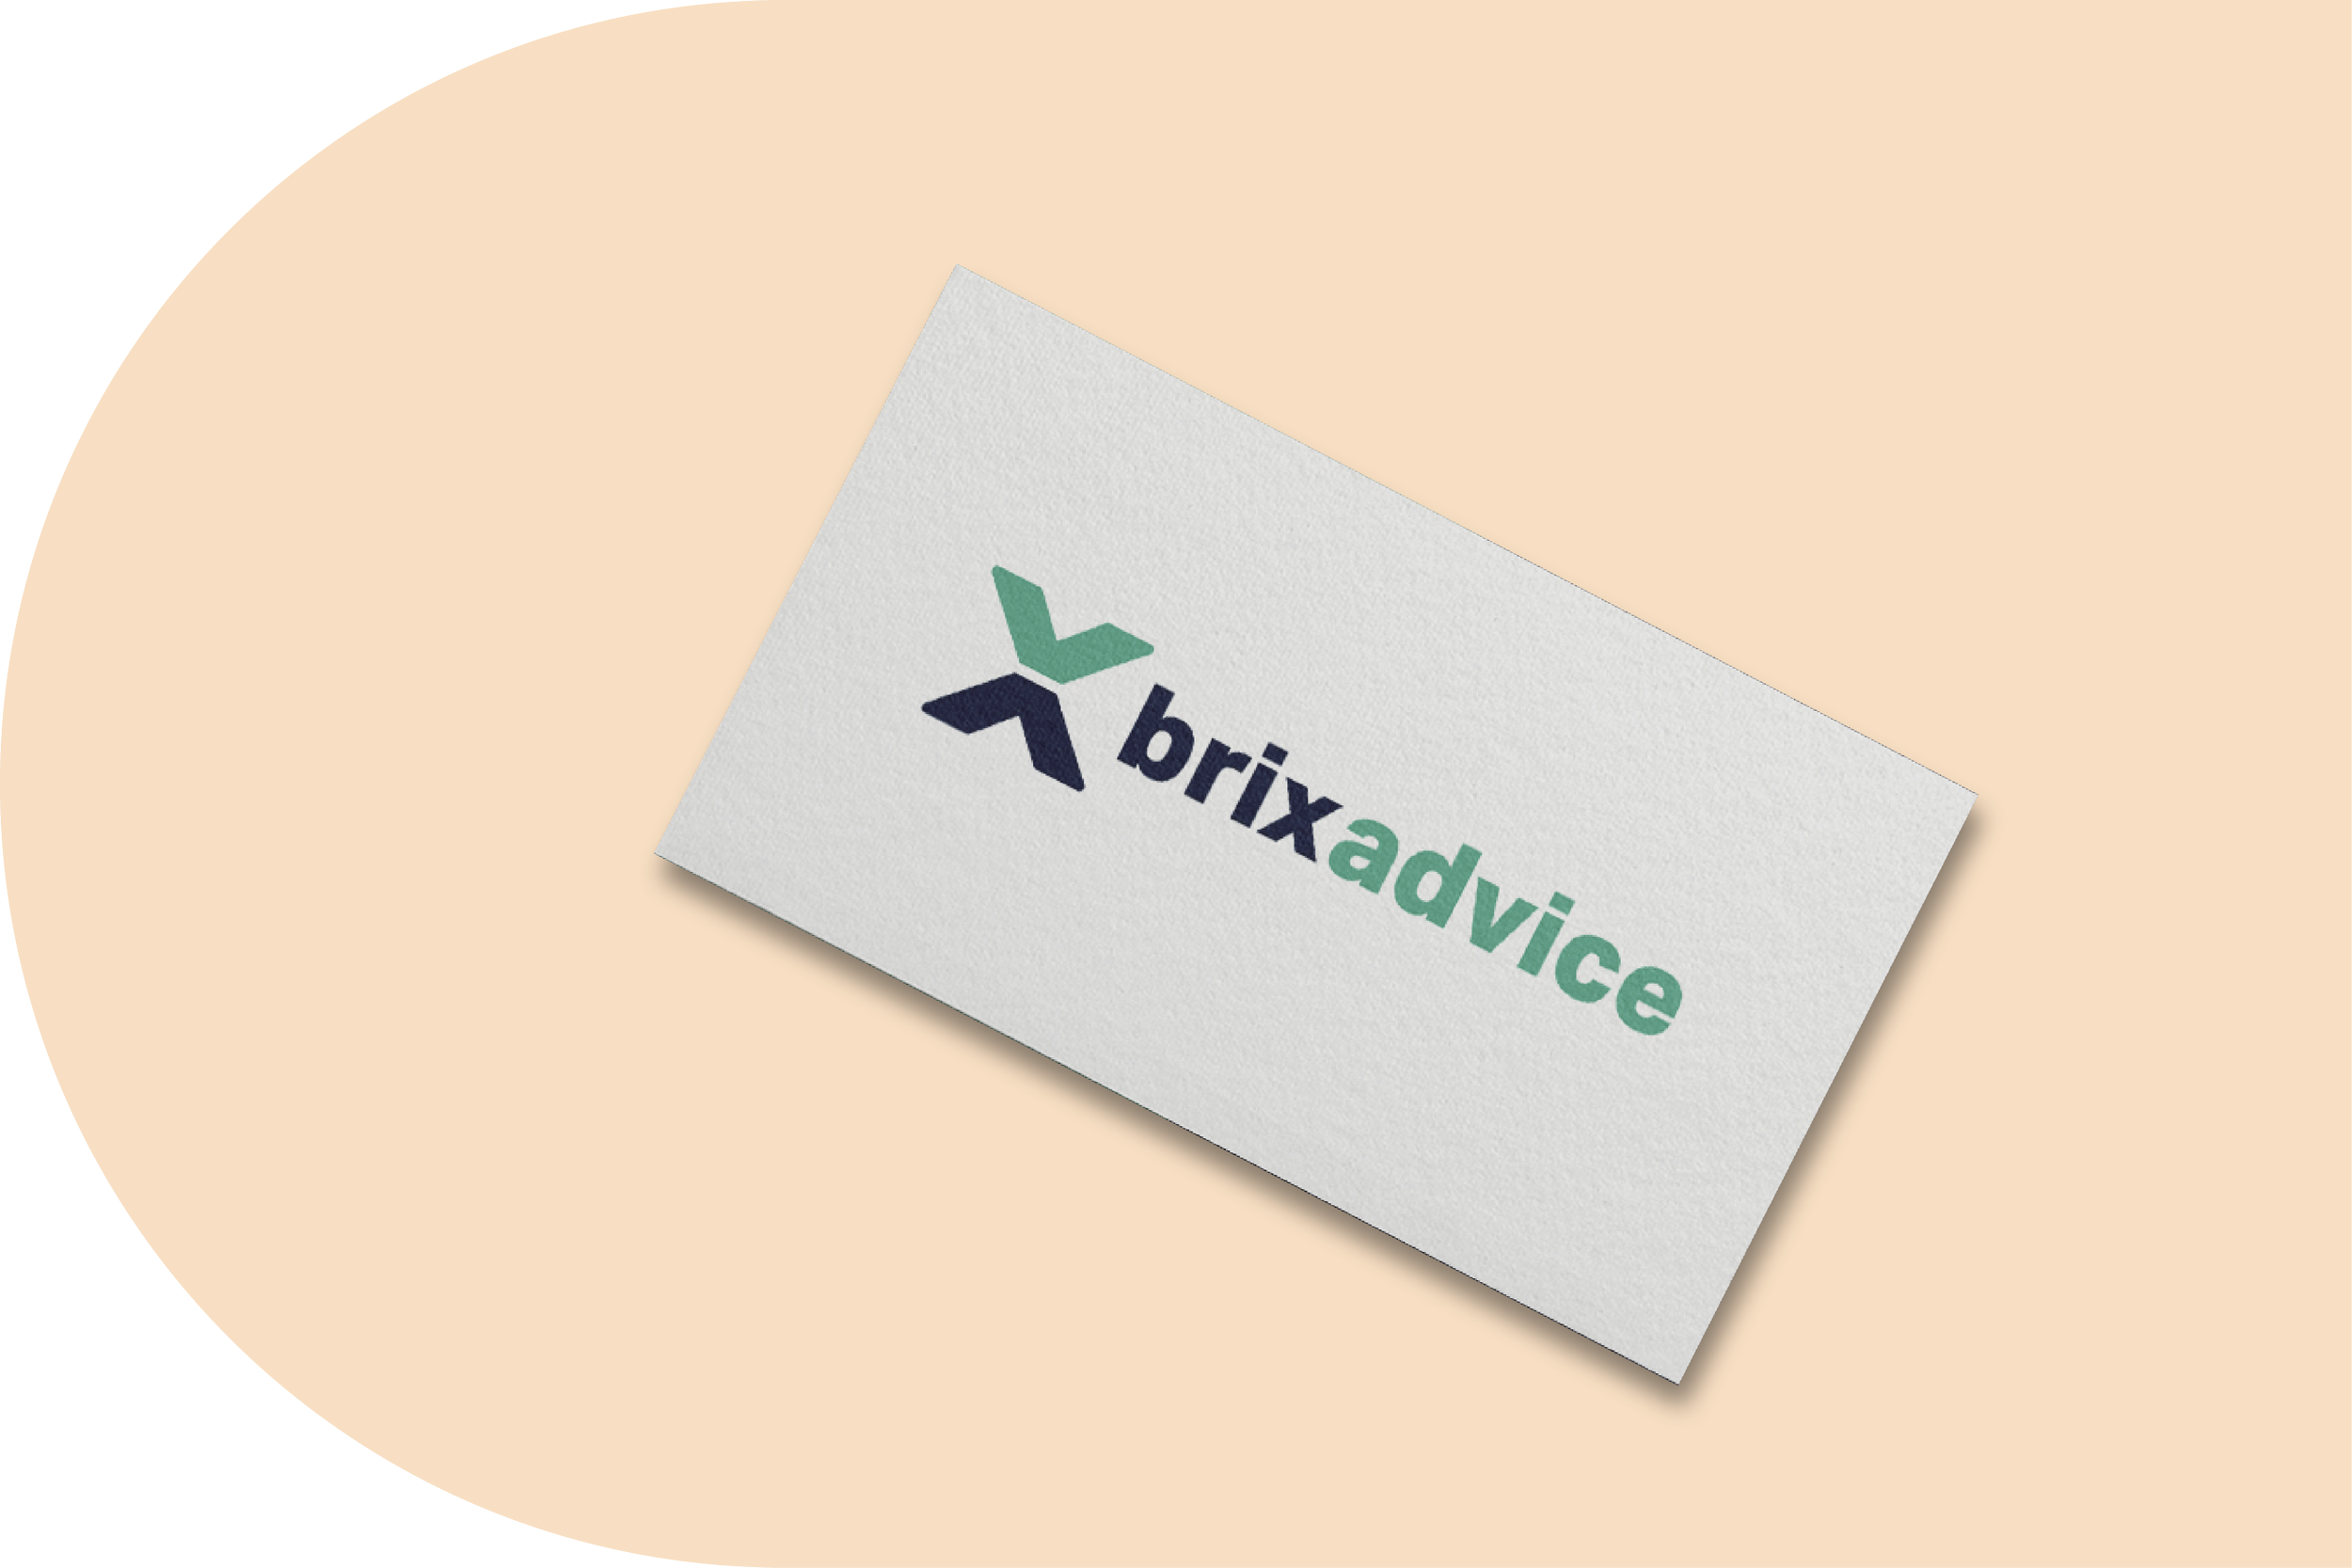 BRIXadvice - Rebranding